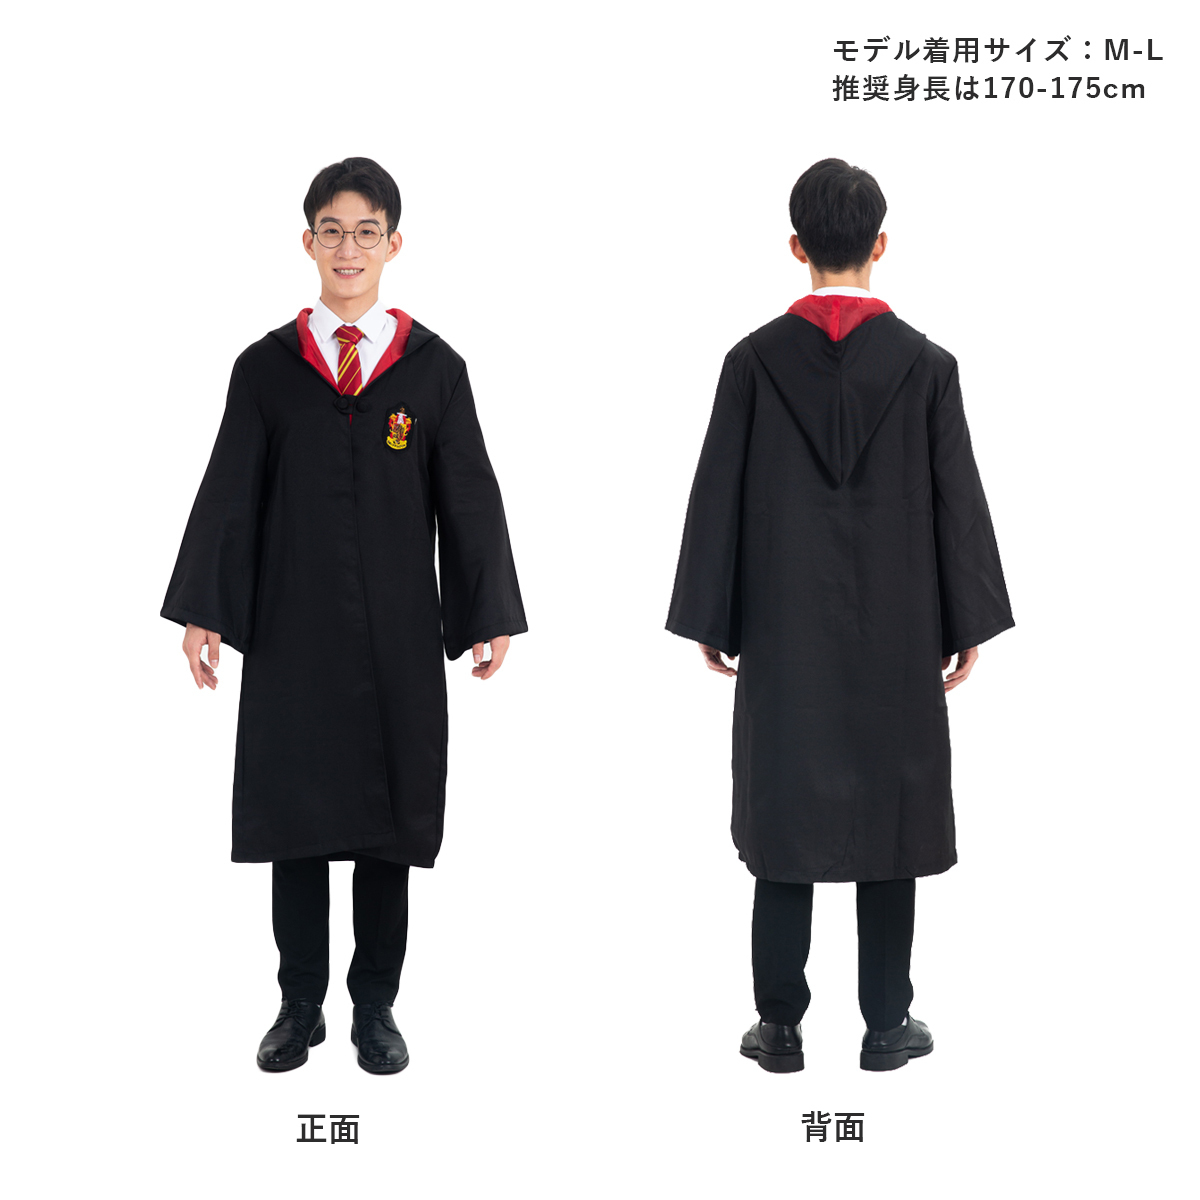  костюмированная игра Harry Potter костюм ребенок взрослый usj товары мужчина женщина low b трость ho gwa-tsu muffler костюм 